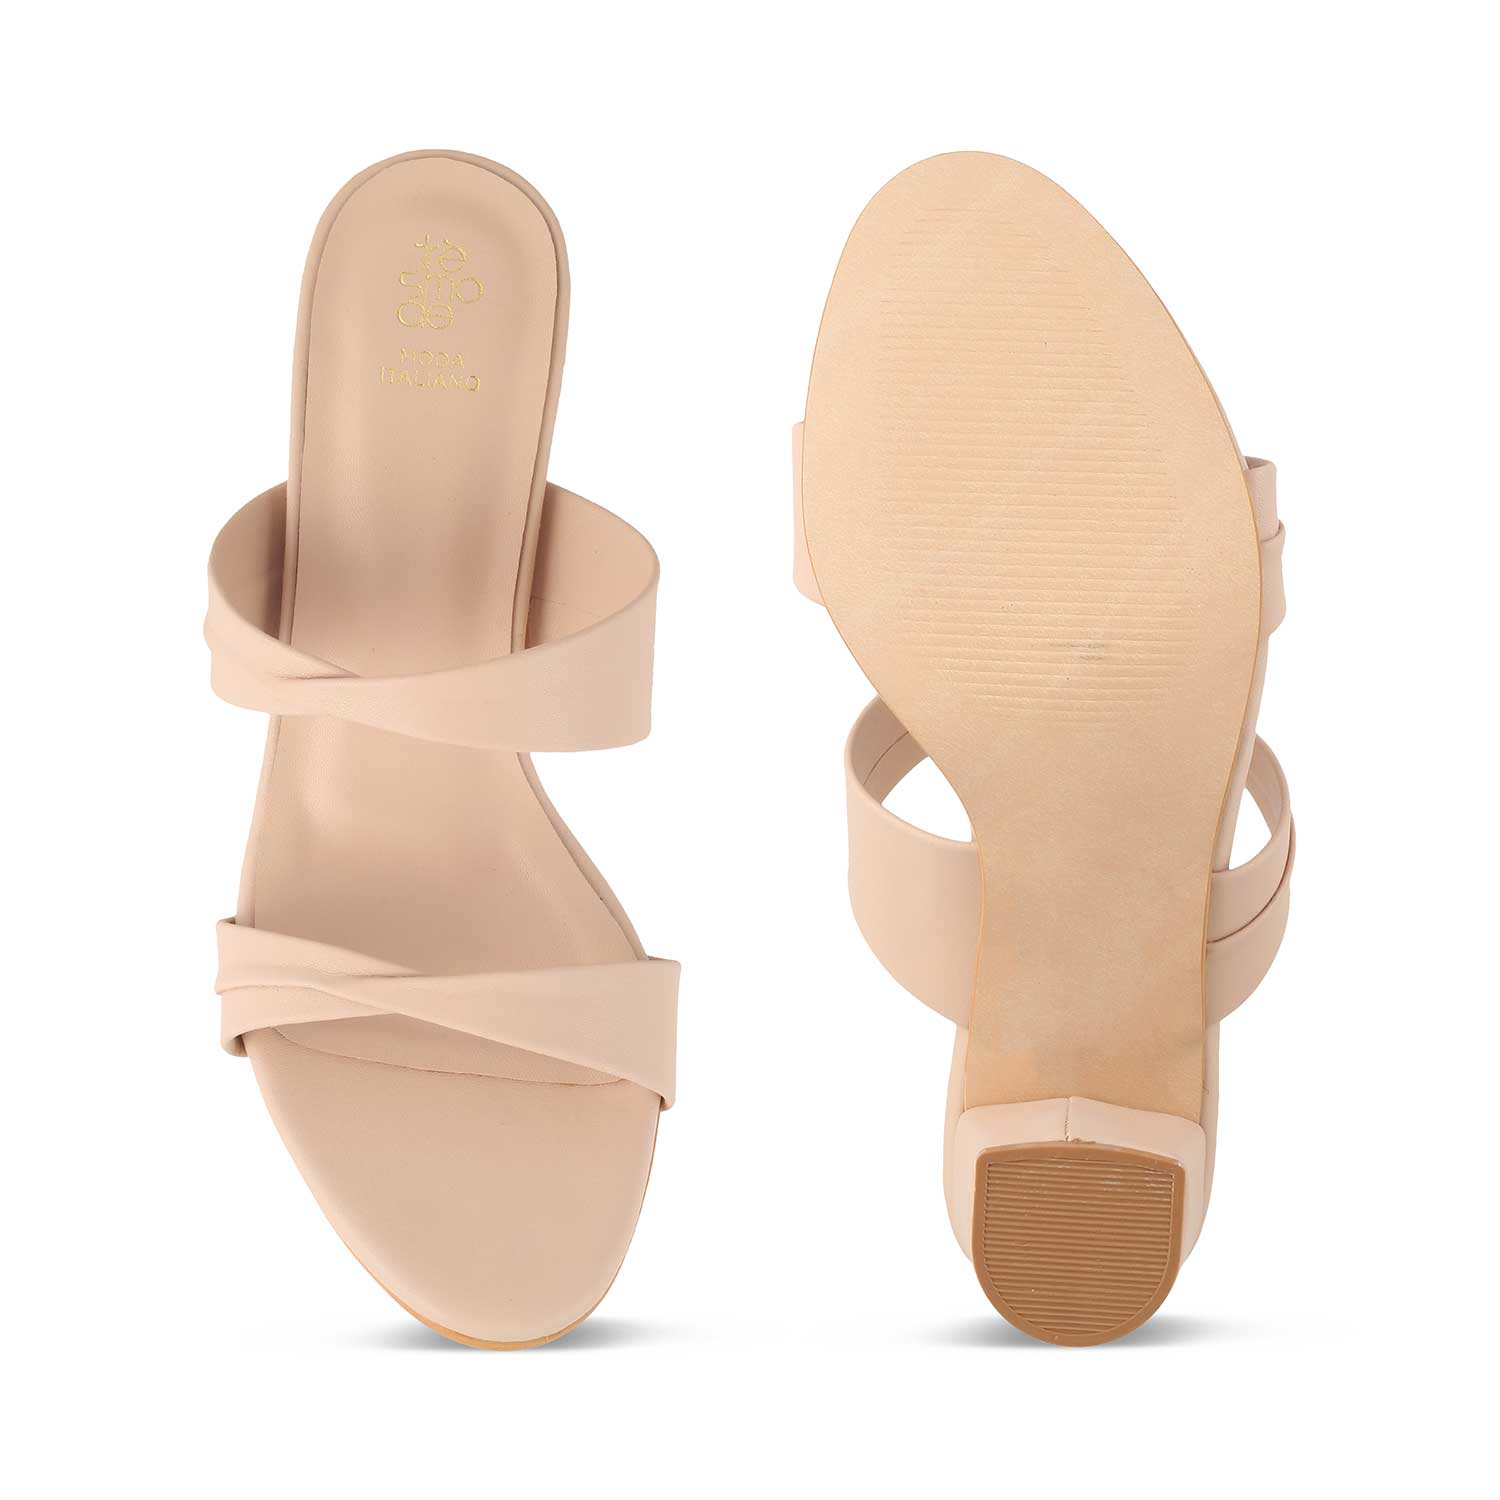 Sofia Beige Women's Casual Block Heel Sandals Online at Tresmode